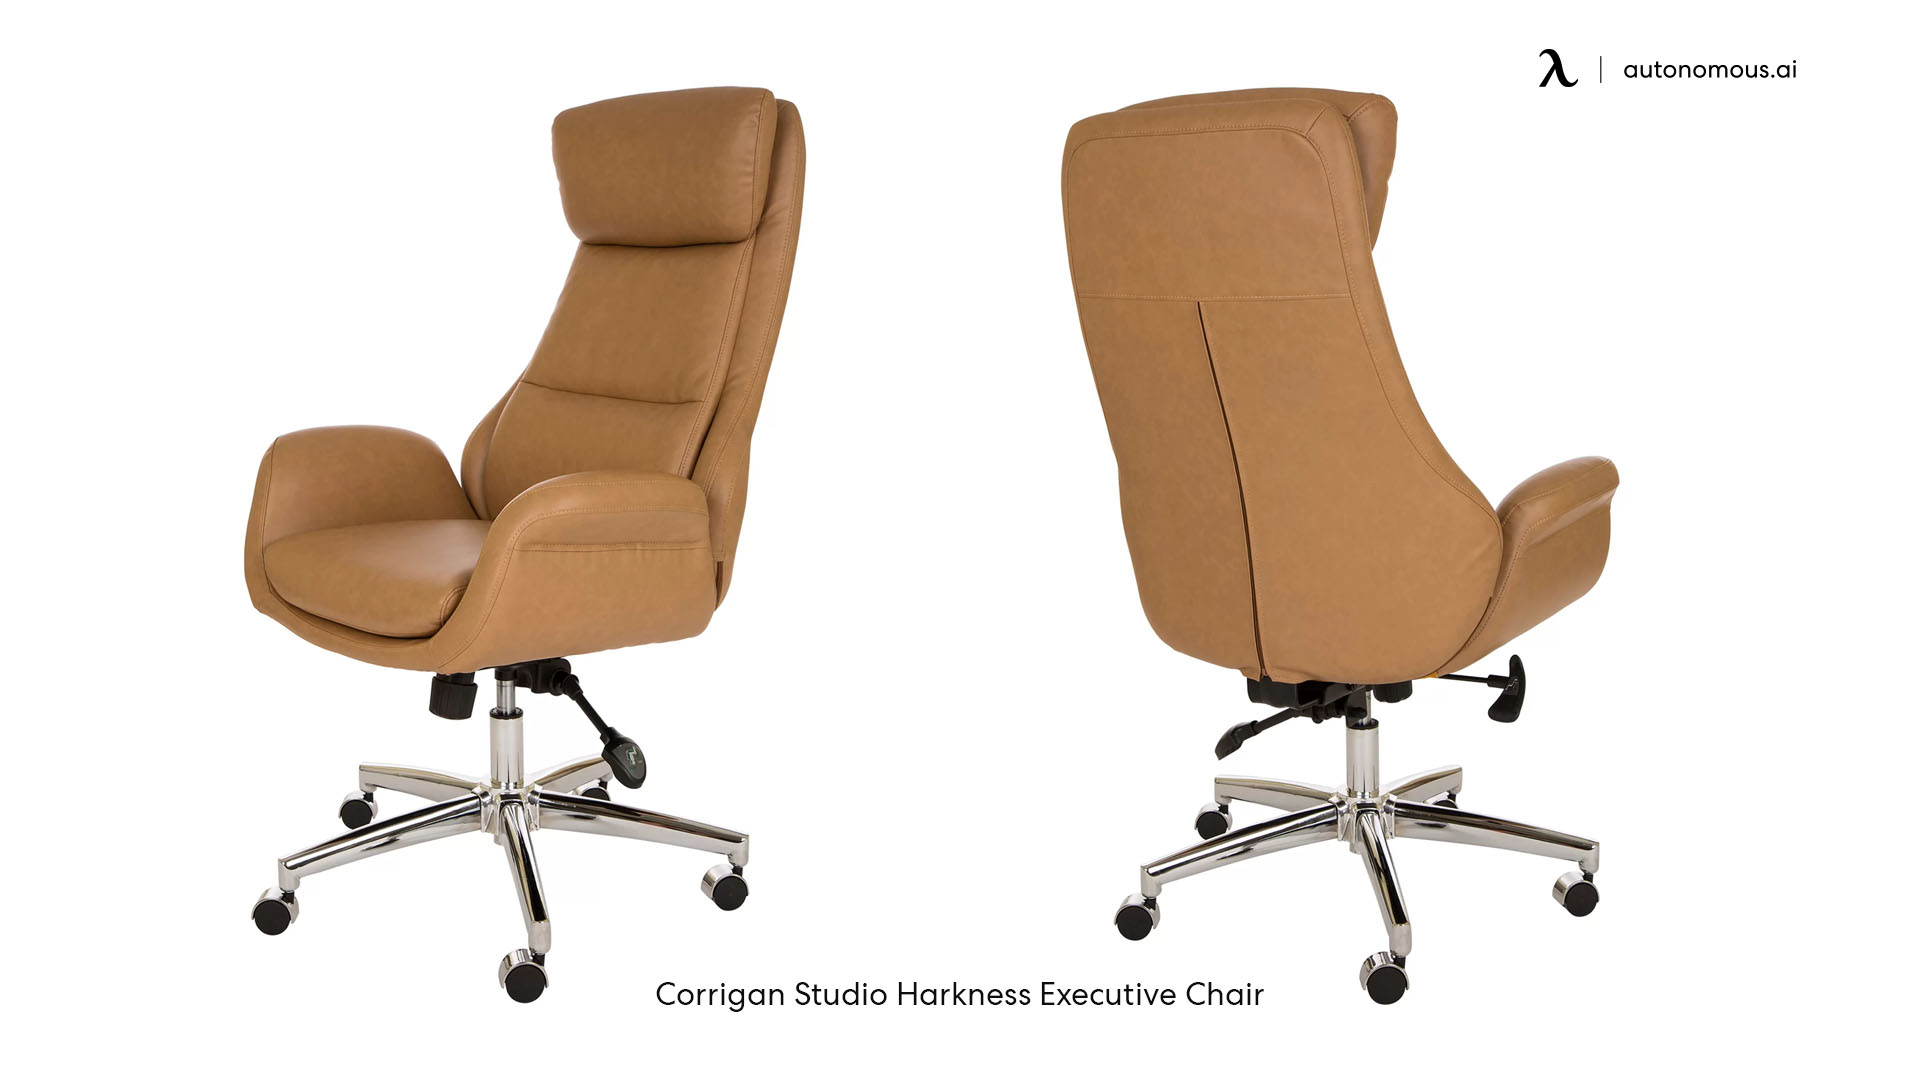 Corrigan Studio trendy office chair